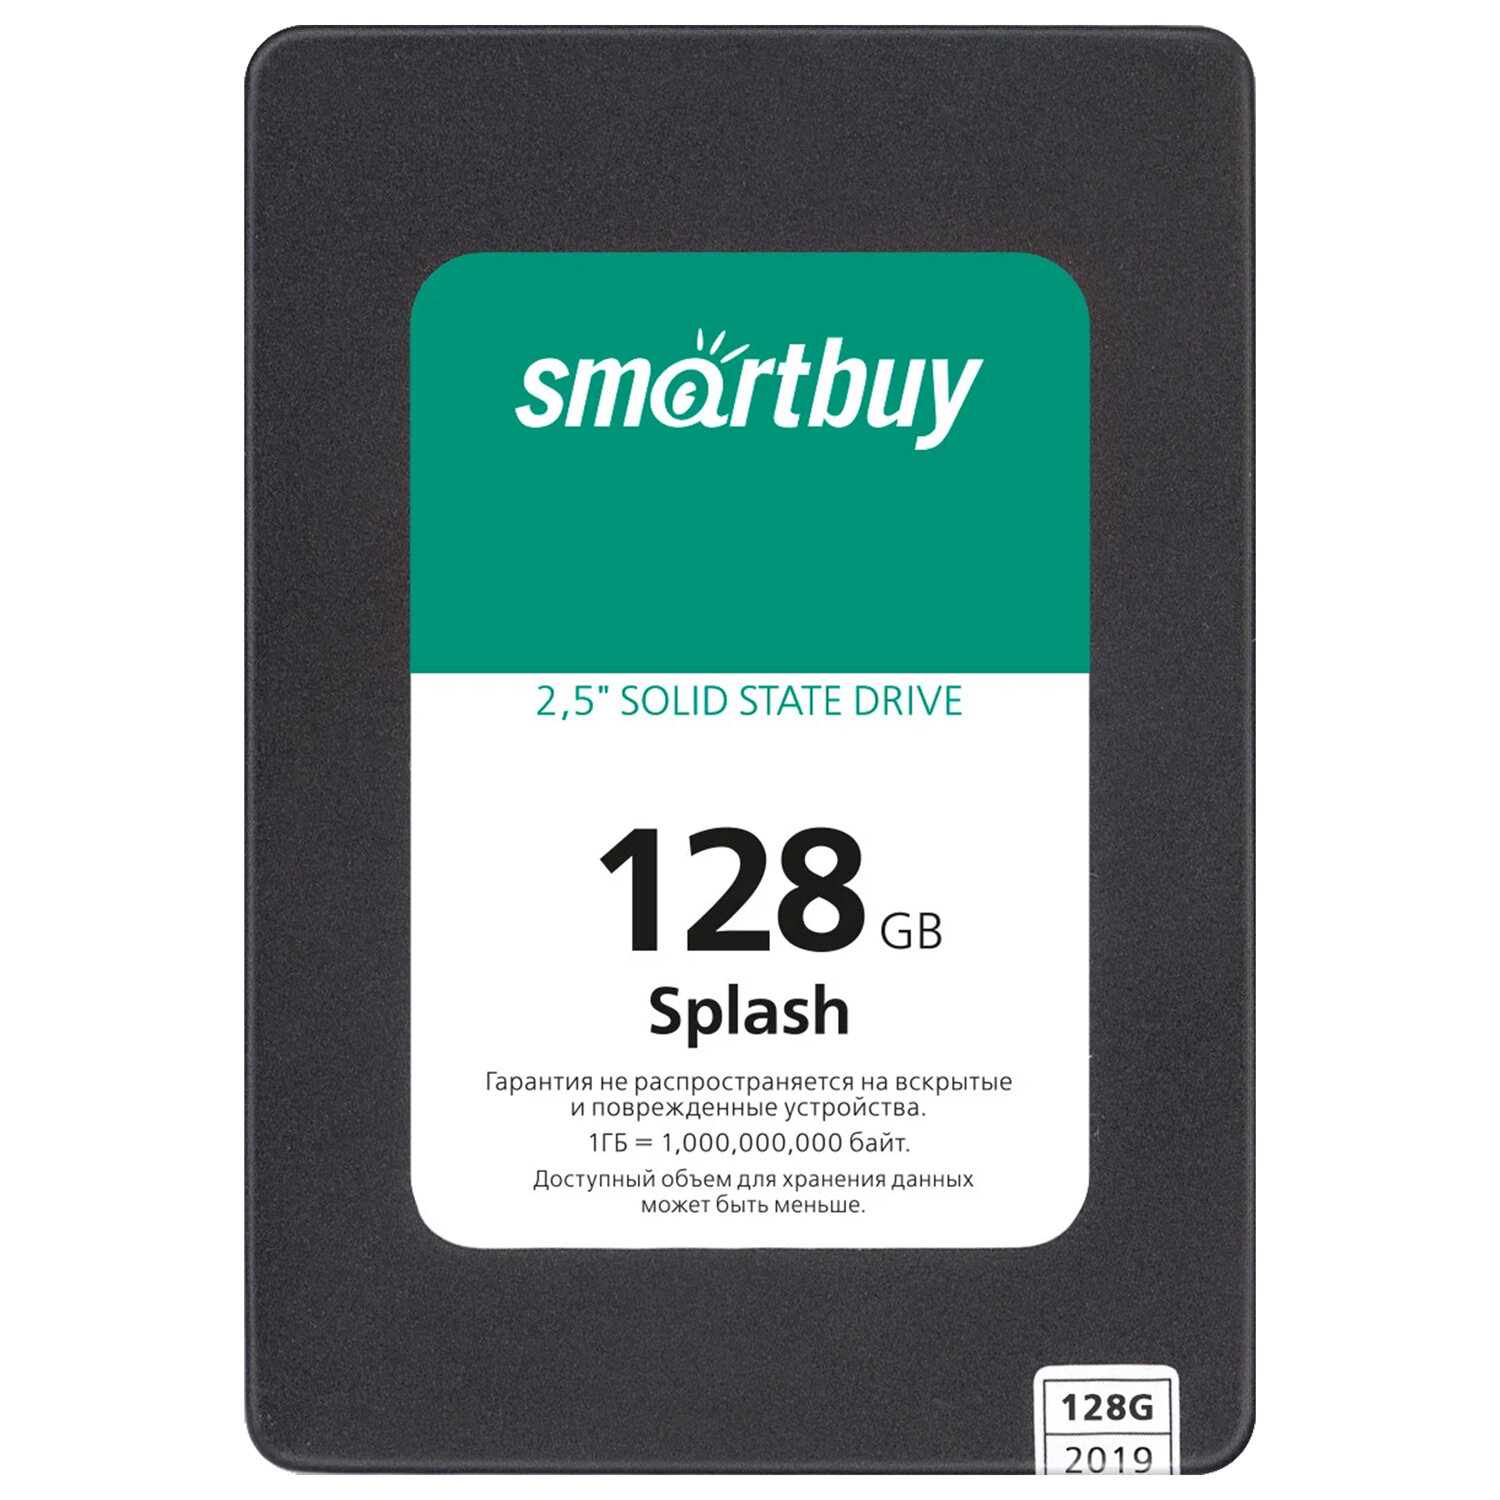 Smartbuy  SMARTBUY SSD-128GT-MX902